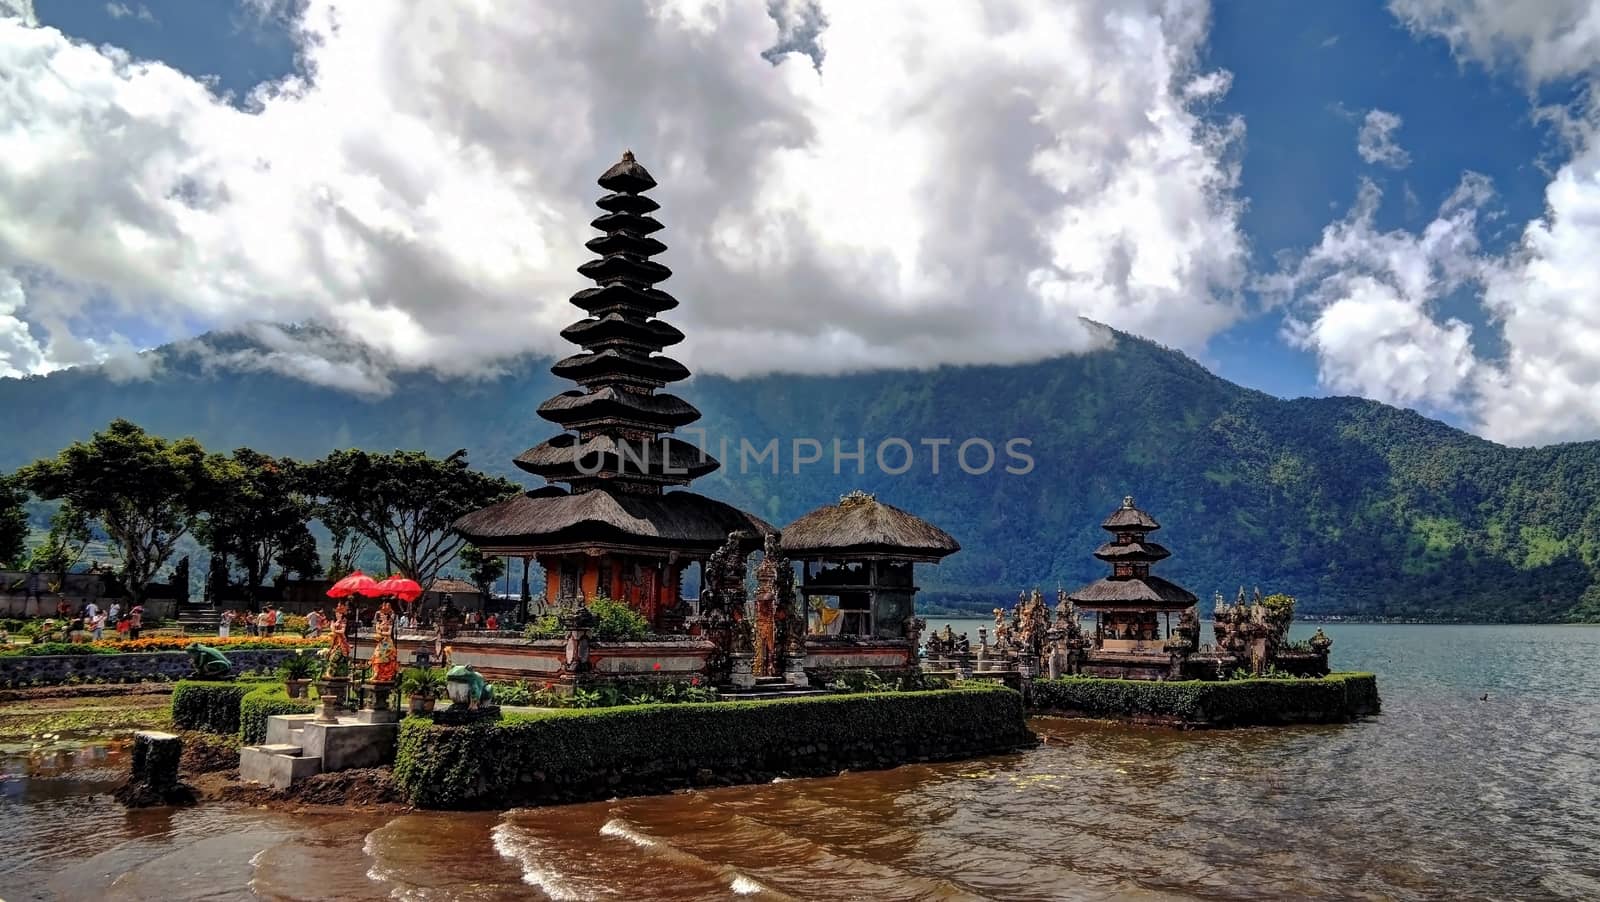 Pura Ulun Danu temple and Bratan lake, Bali, Indonesia